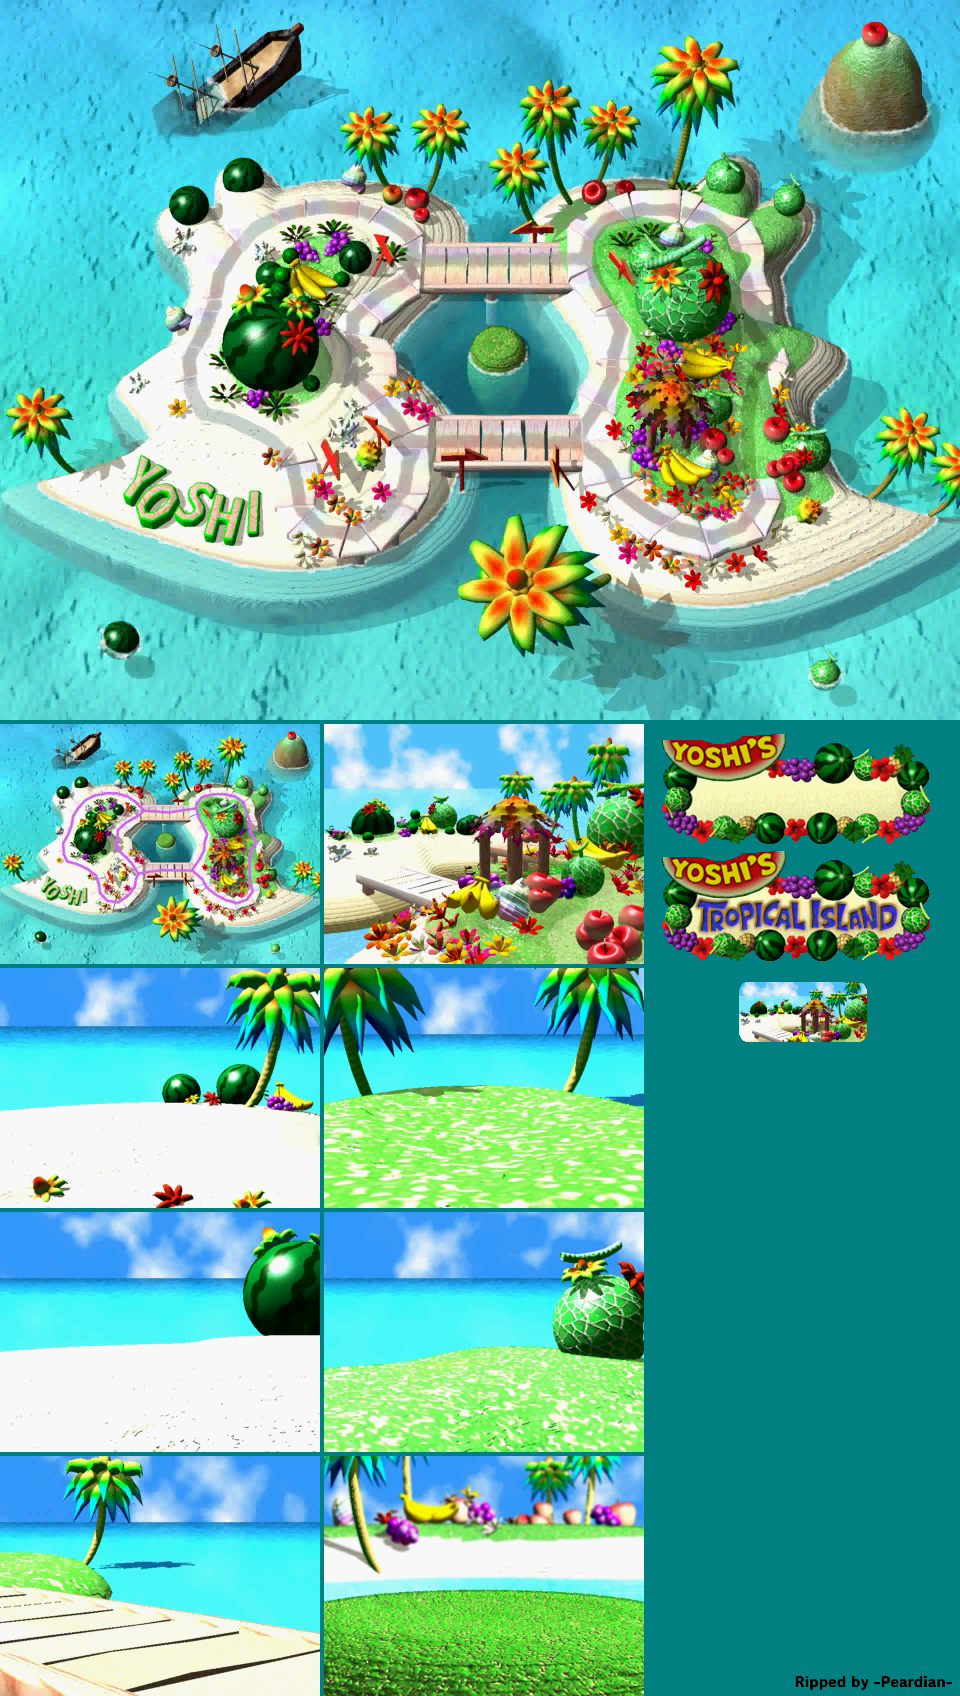 Mario Party - Yoshi's Tropical Island